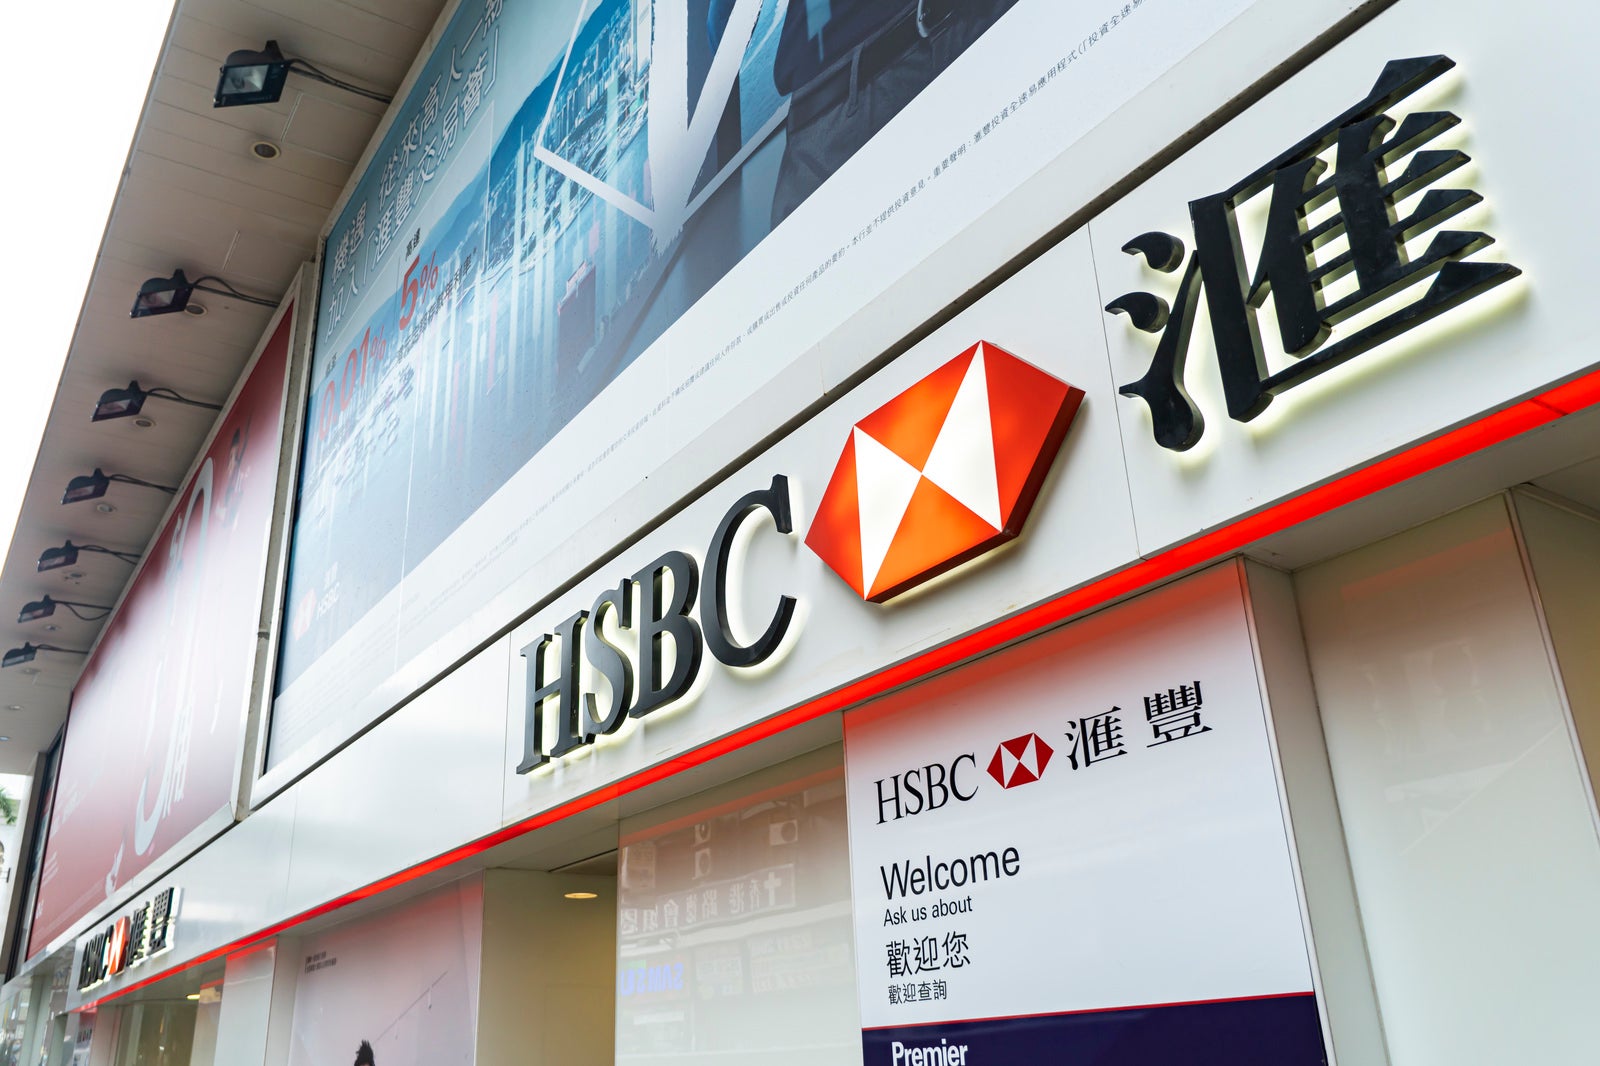 「香港にある世界トップクラスの銀行HSBCの支店(尖沙咀)」の写真